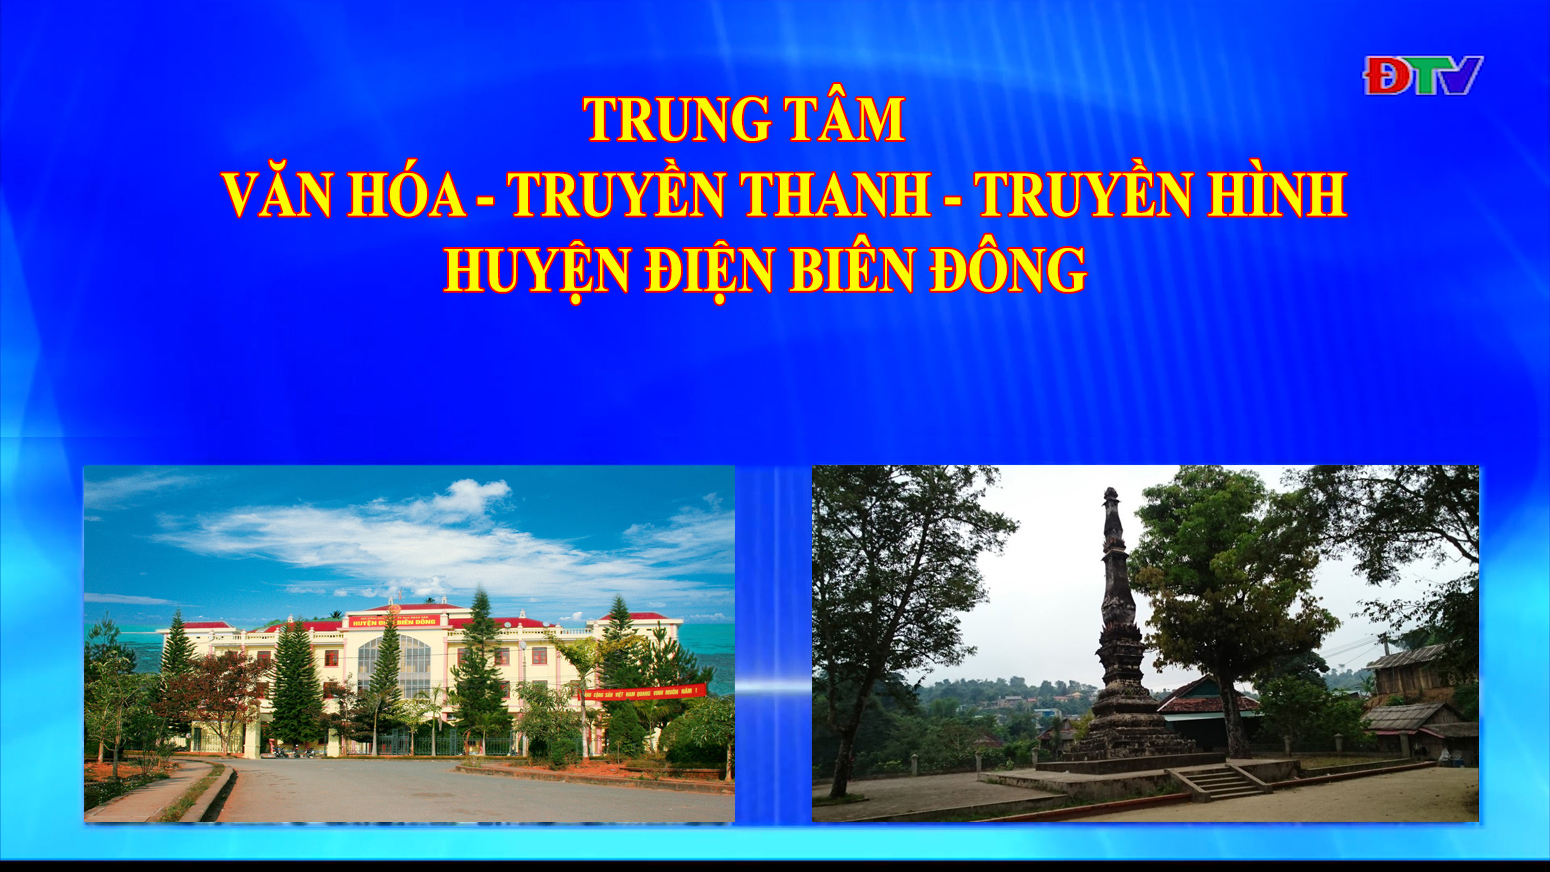 Trung tâm VH-TTTH huyện Điện Biên Đông (Ngày 28-8-2021)